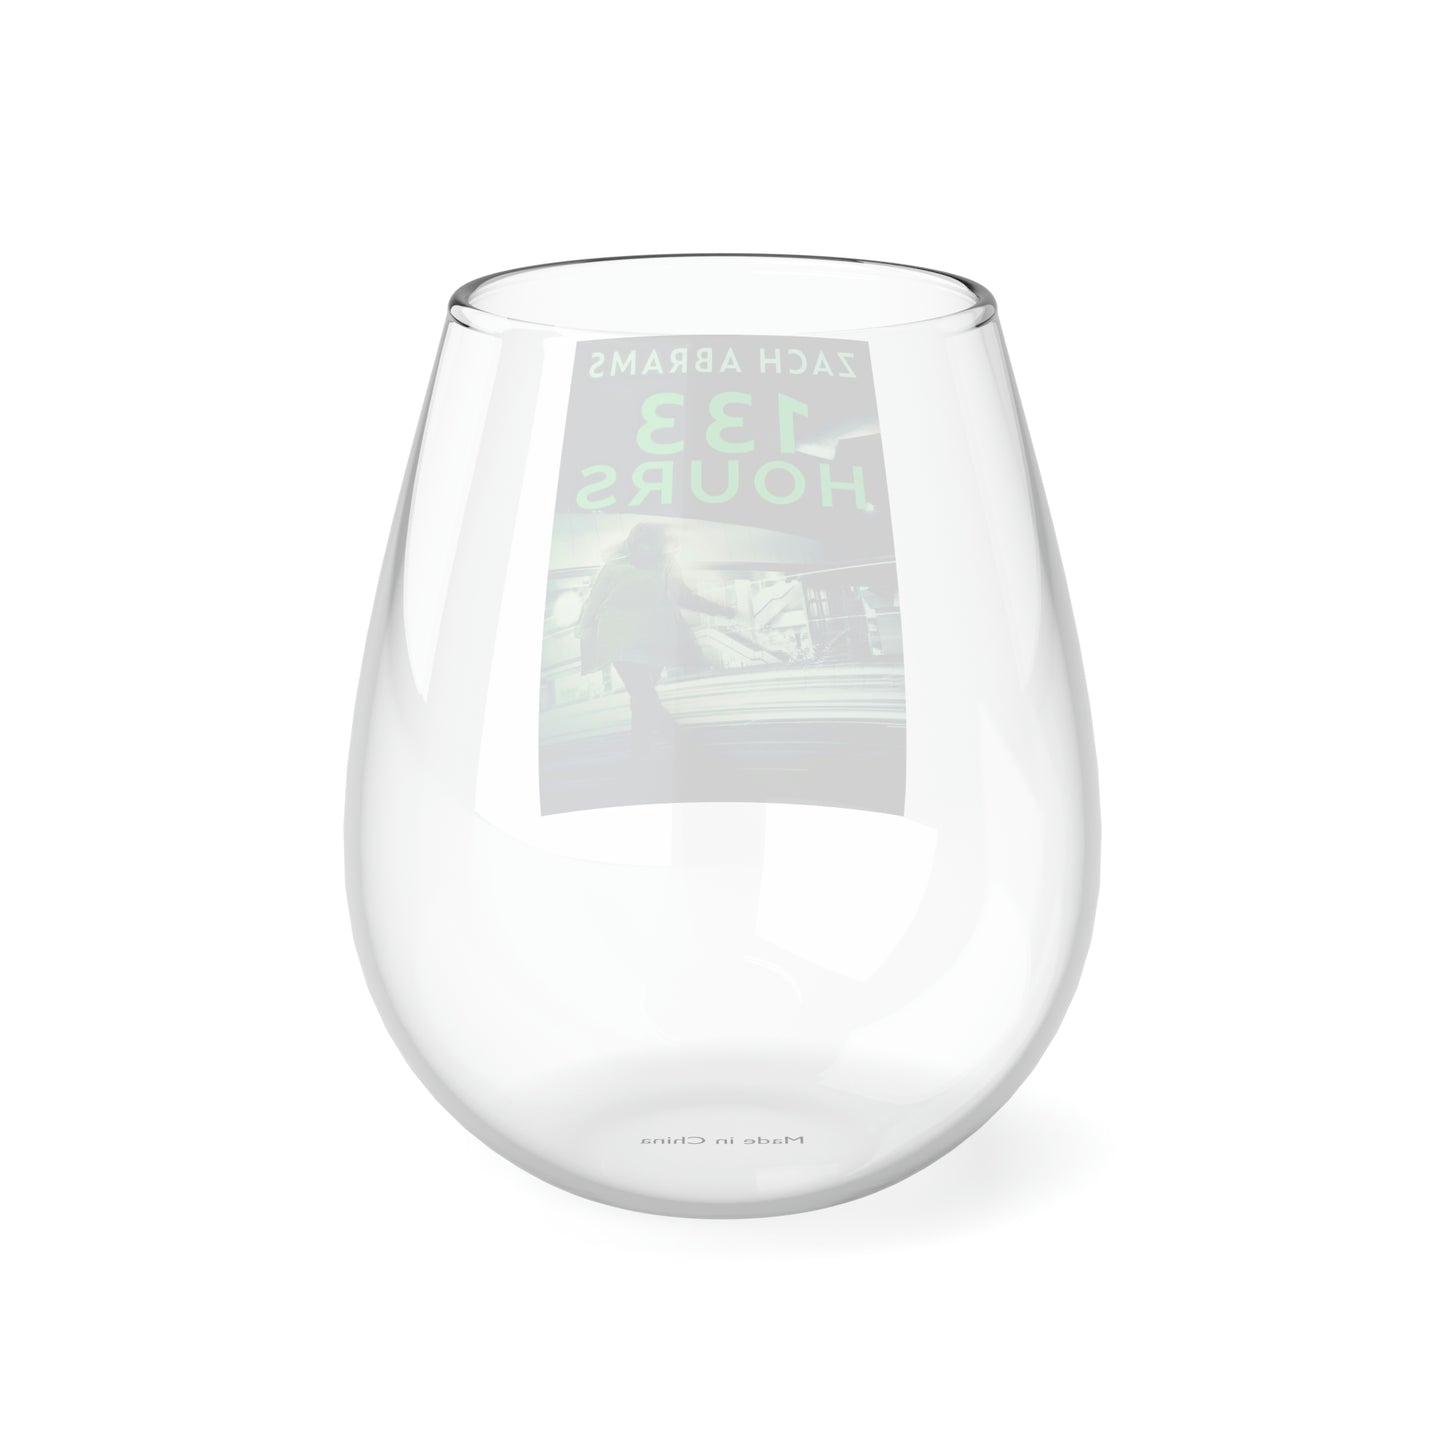 133 Hours - Stemless Wine Glass, 11.75oz